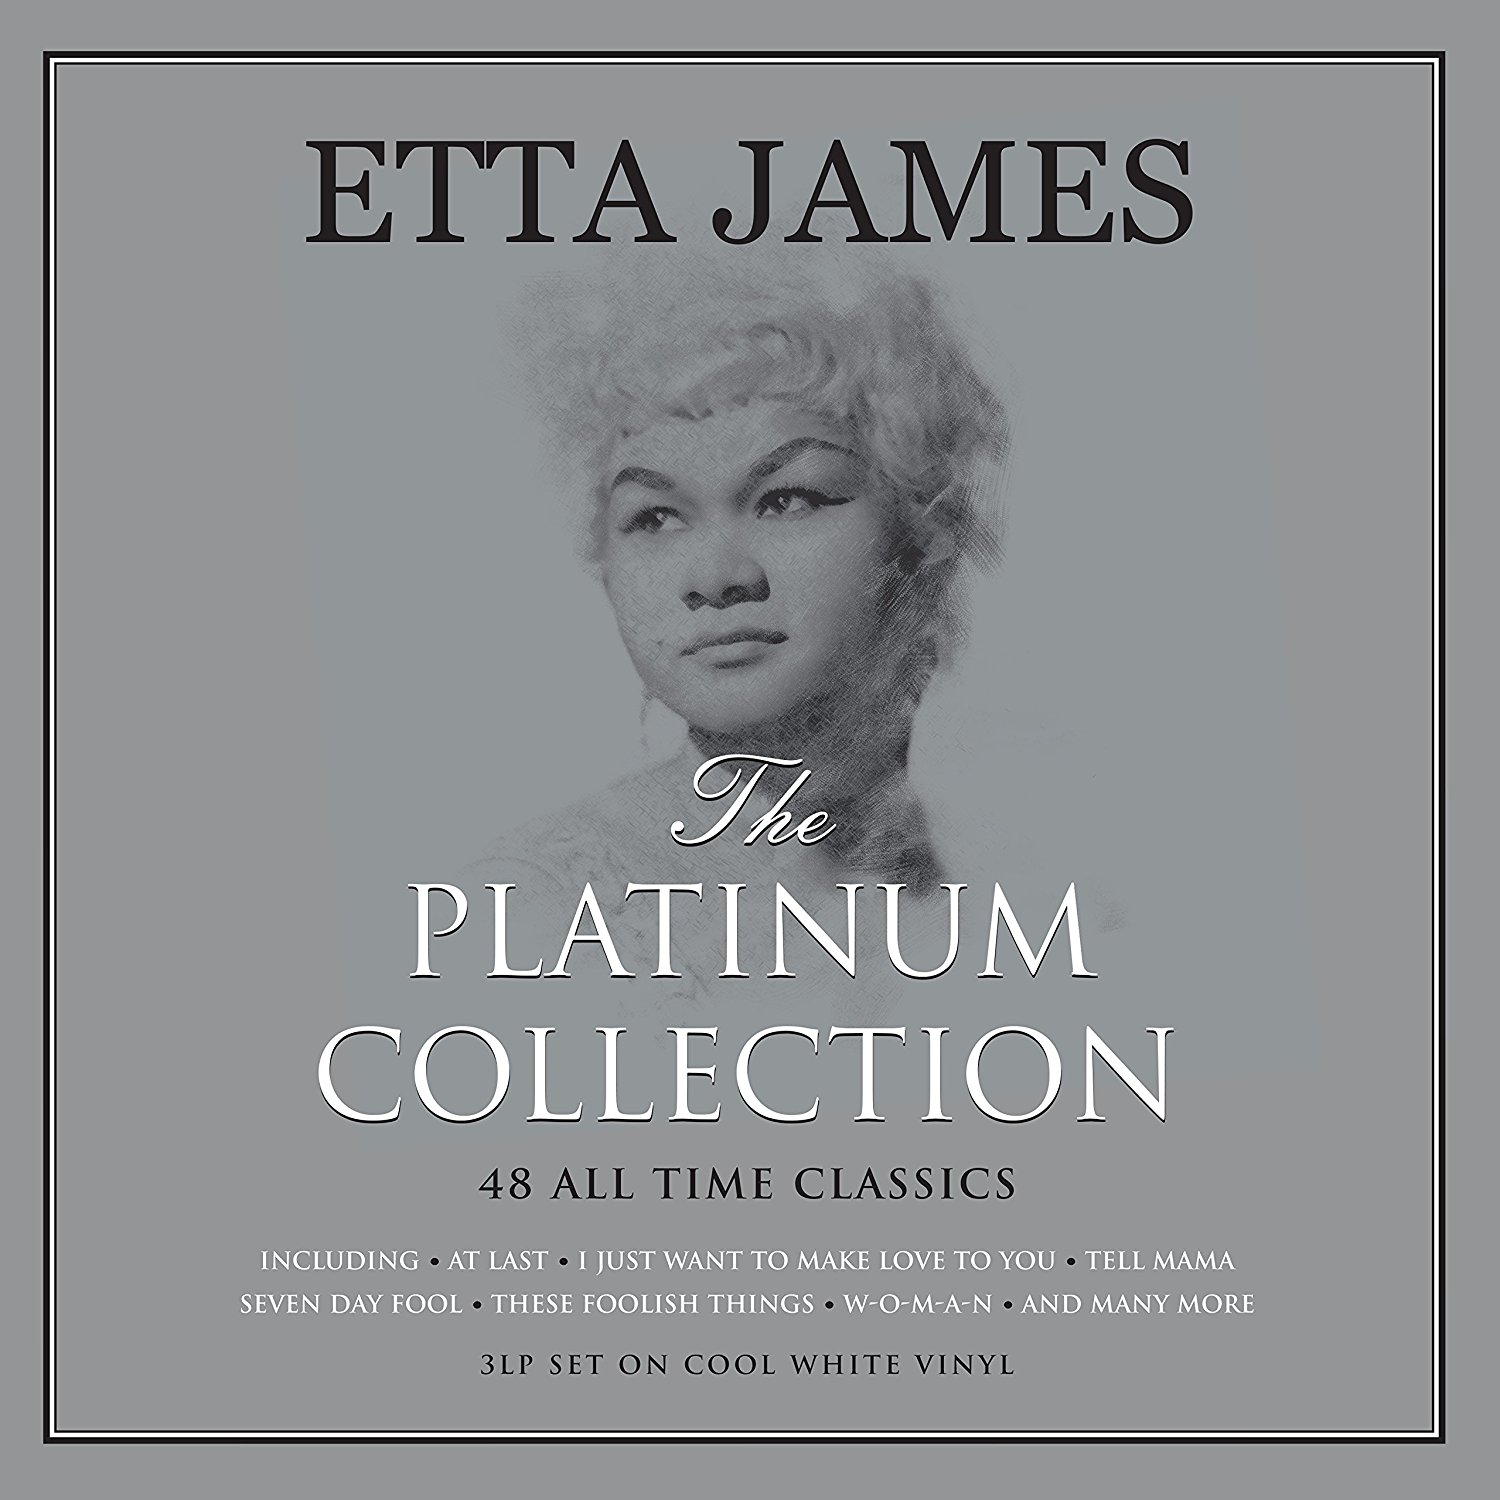 Vinile Etta James - The Platinum Collection (White Vinyl) (3 Lp) NUOVO SIGILLATO, EDIZIONE DEL 16/11/2017 SUBITO DISPONIBILE